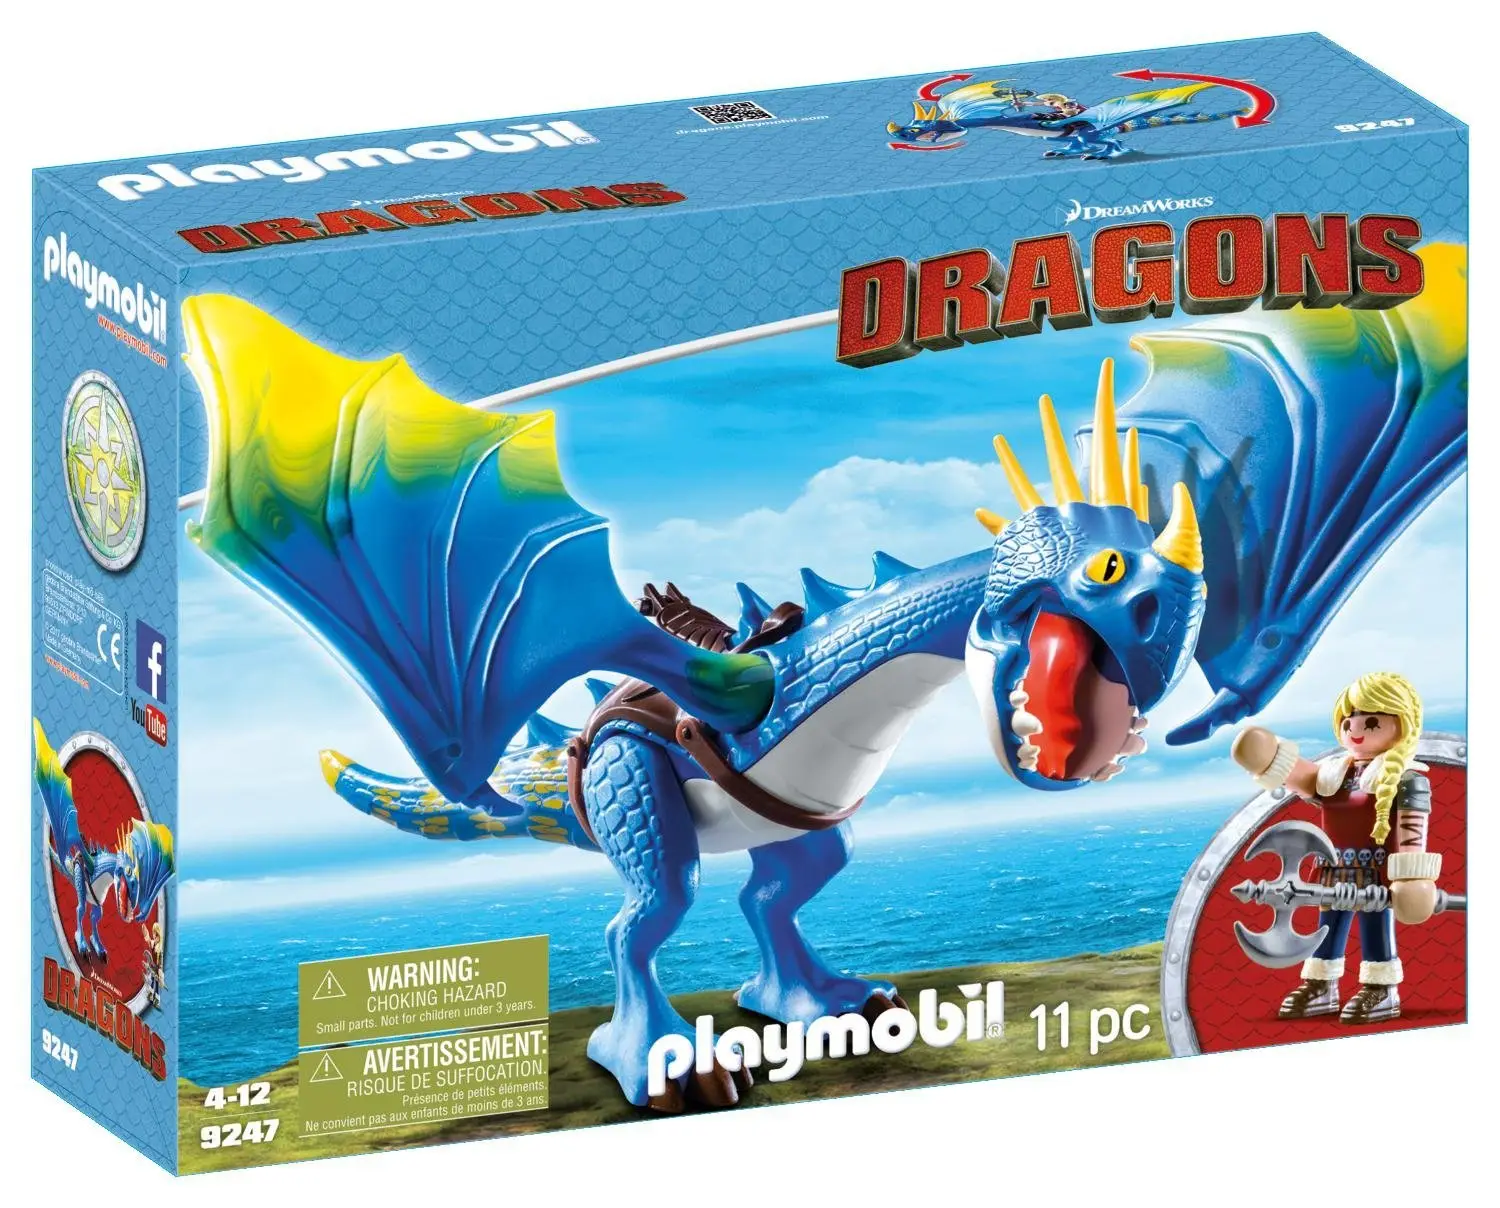 Playmobil - Dragons - Astrid et Tempête, jeu pas cher Amazon